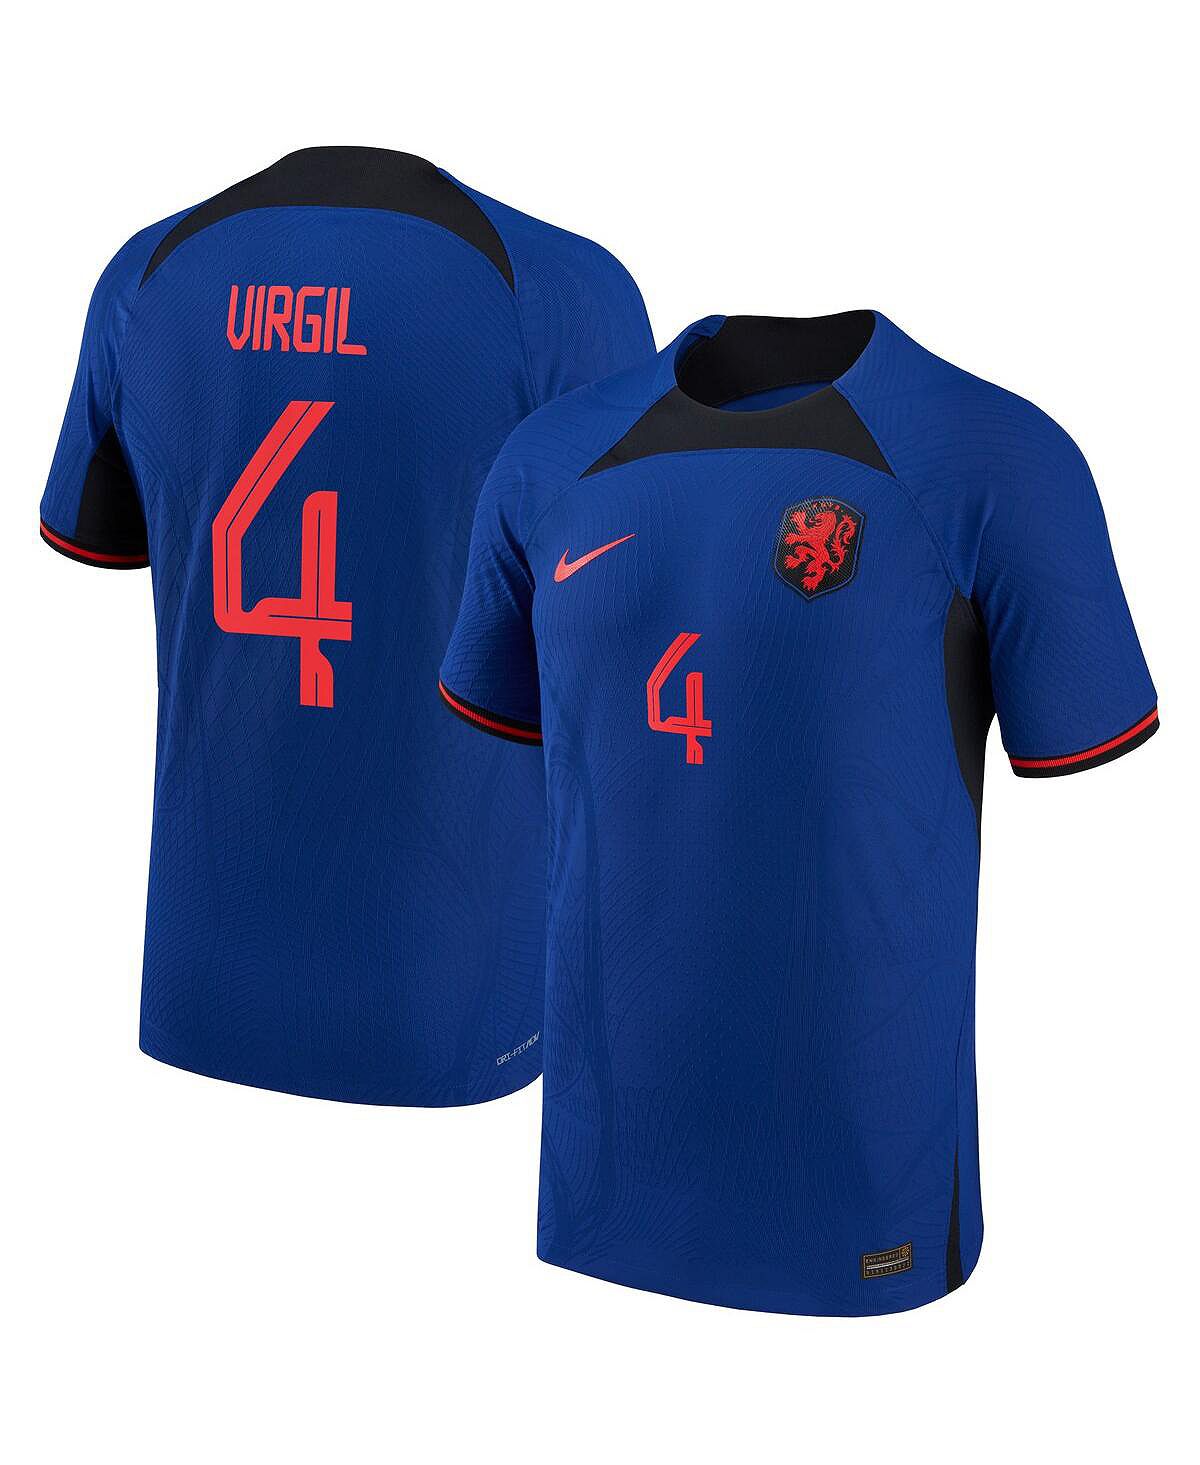 Мужская футболка virgil van dijk blue, национальная сборная нидерландов 2022/23, выездная форма vapor match, аутентичная футболка игрока Nike, синий